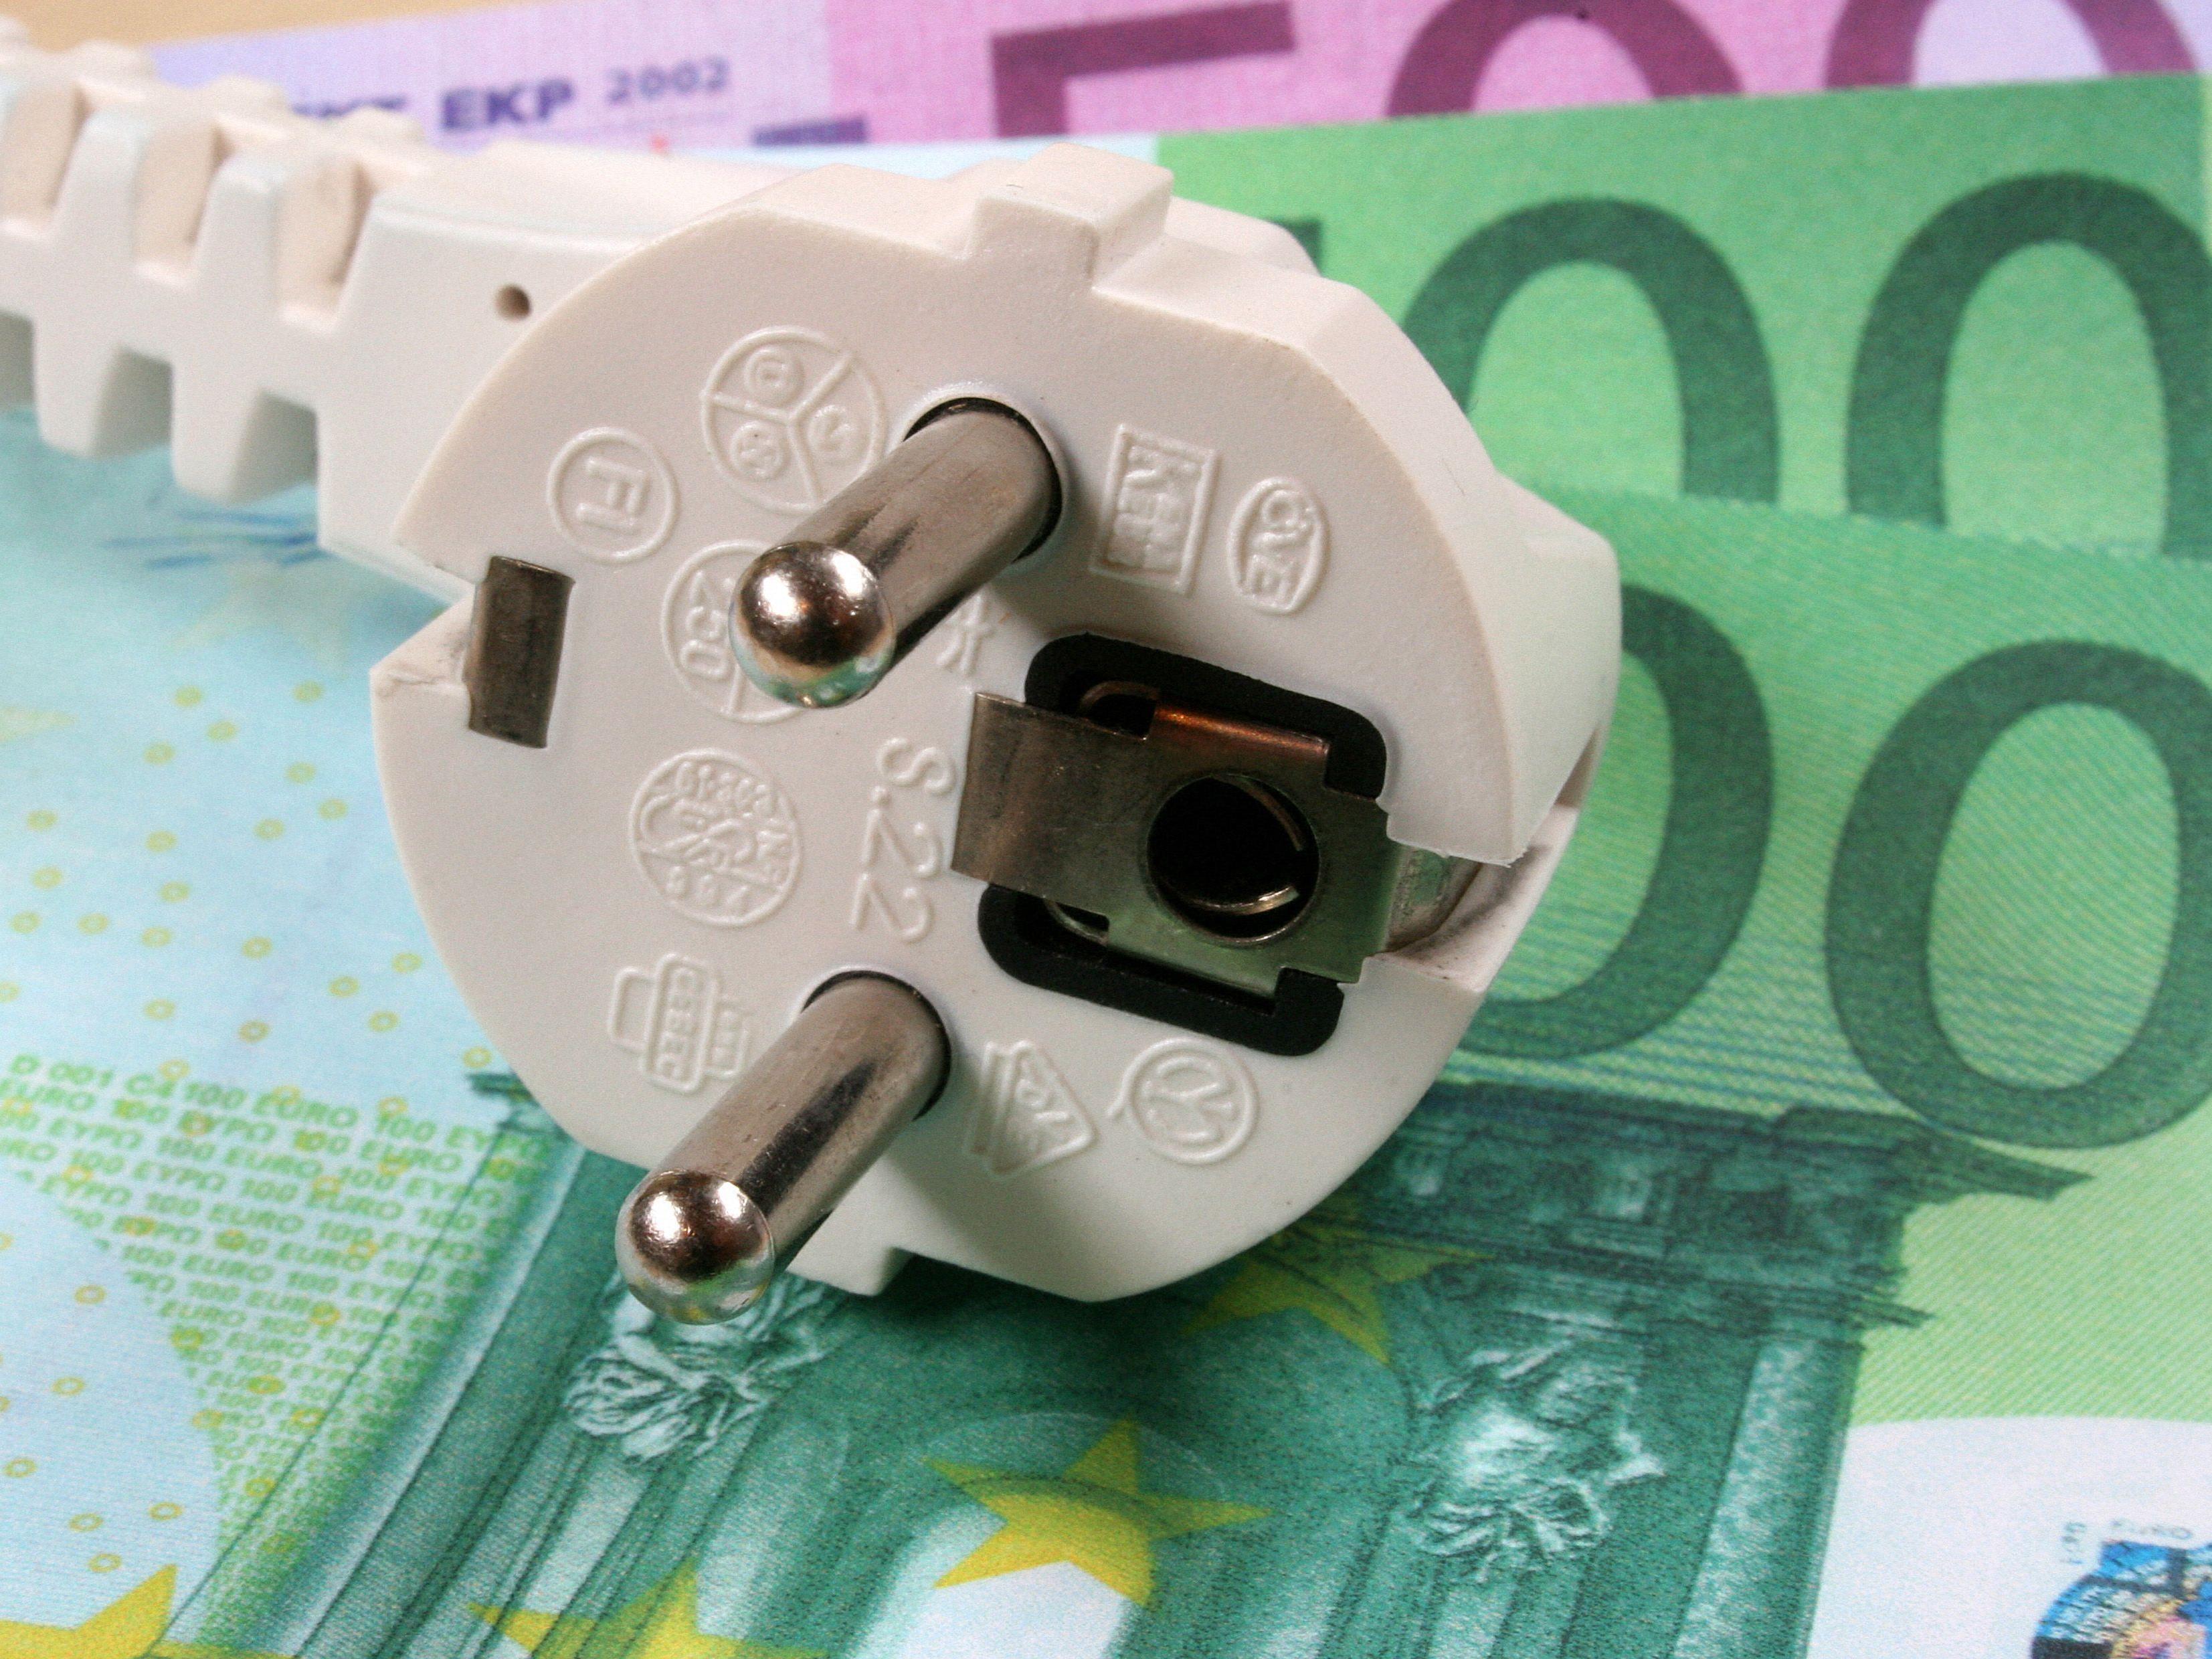 Vorarlberger Haushalt bezahlt durchschnittlich 25 Cent pro Monat mehr.